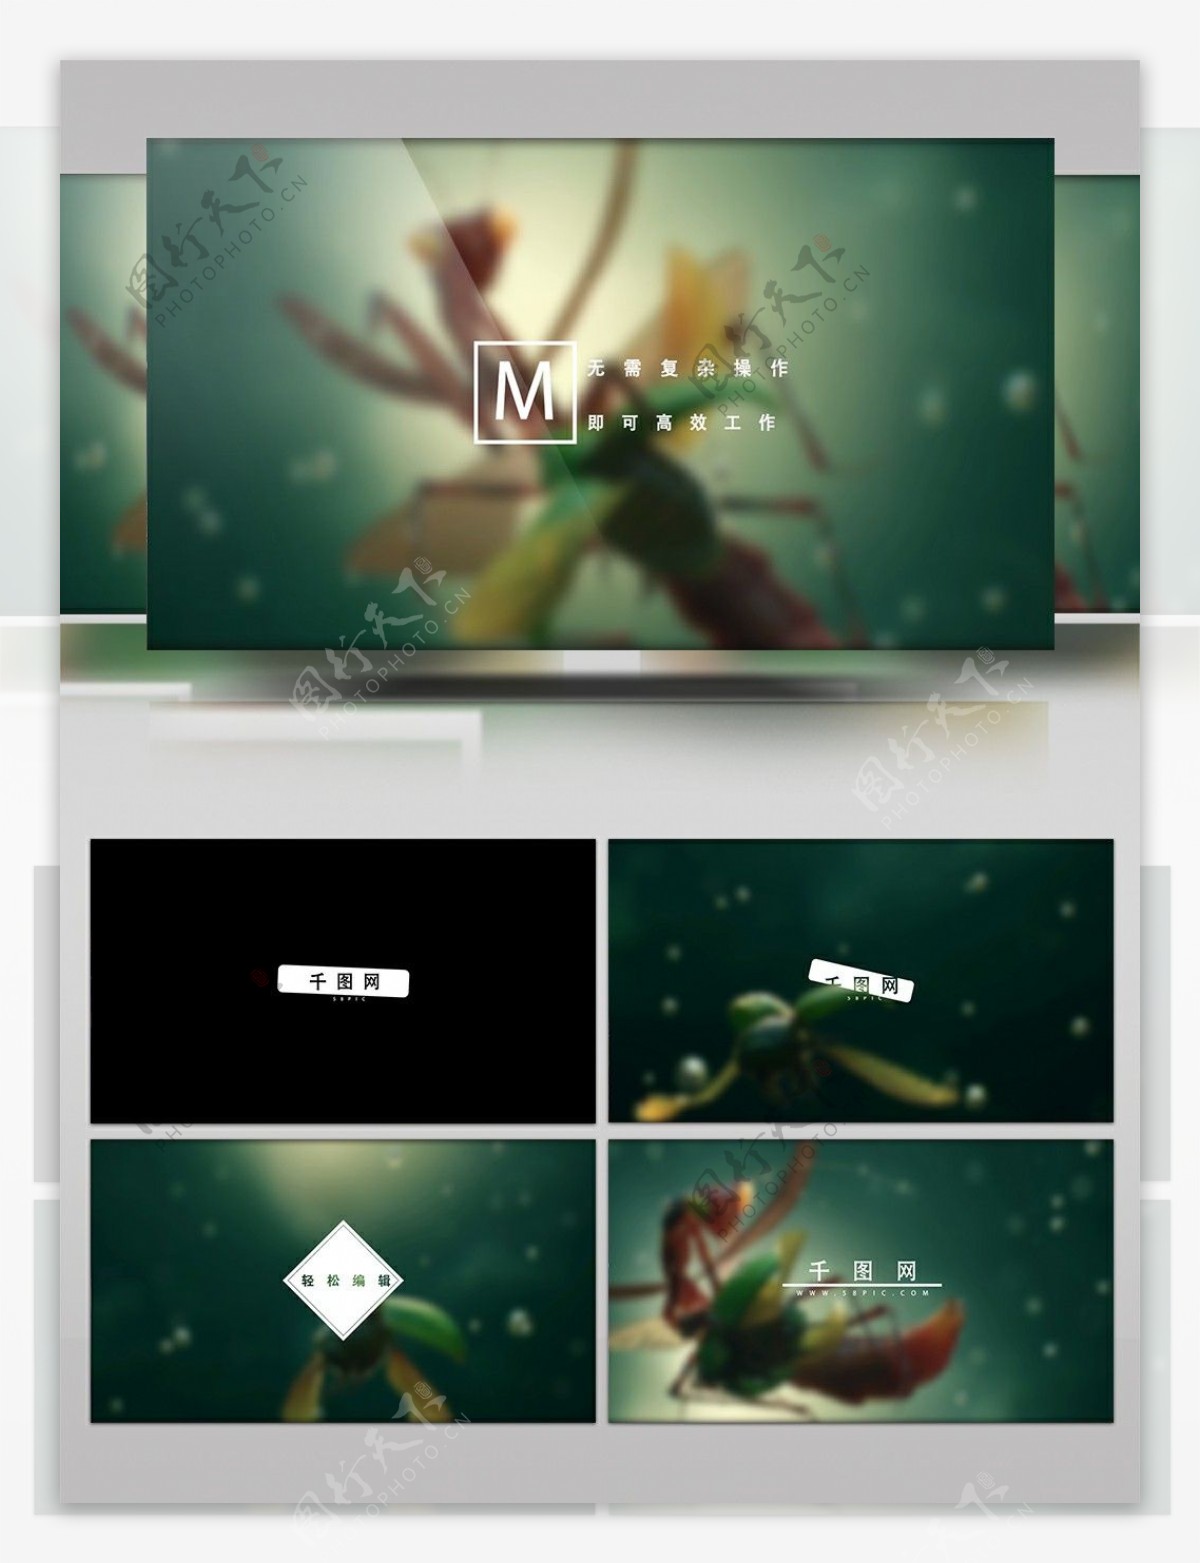 极简风格文字标题MG动画宣传视频AE模板